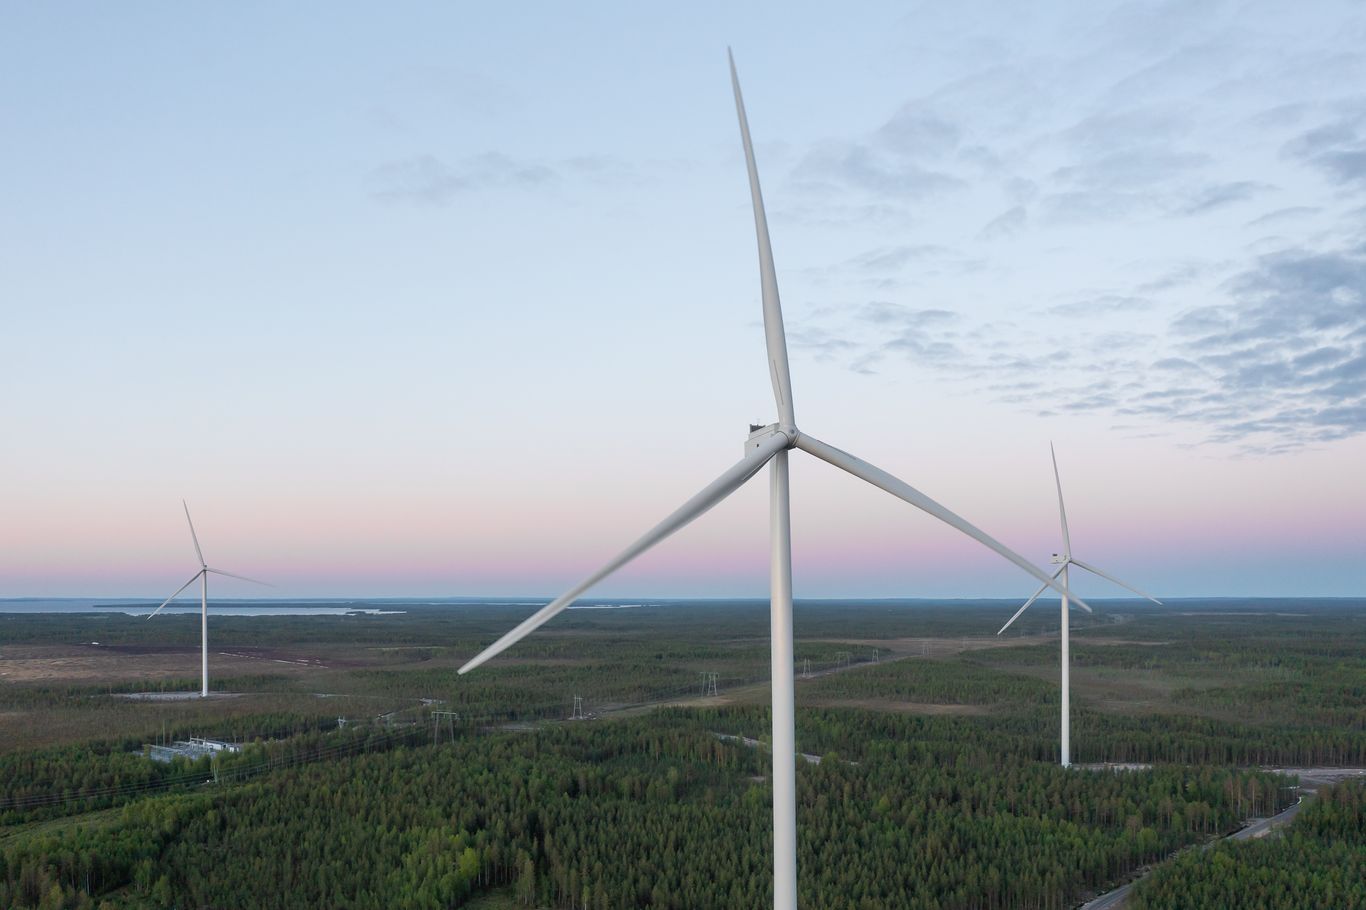 Metsälamminkangas wind farm Finland 